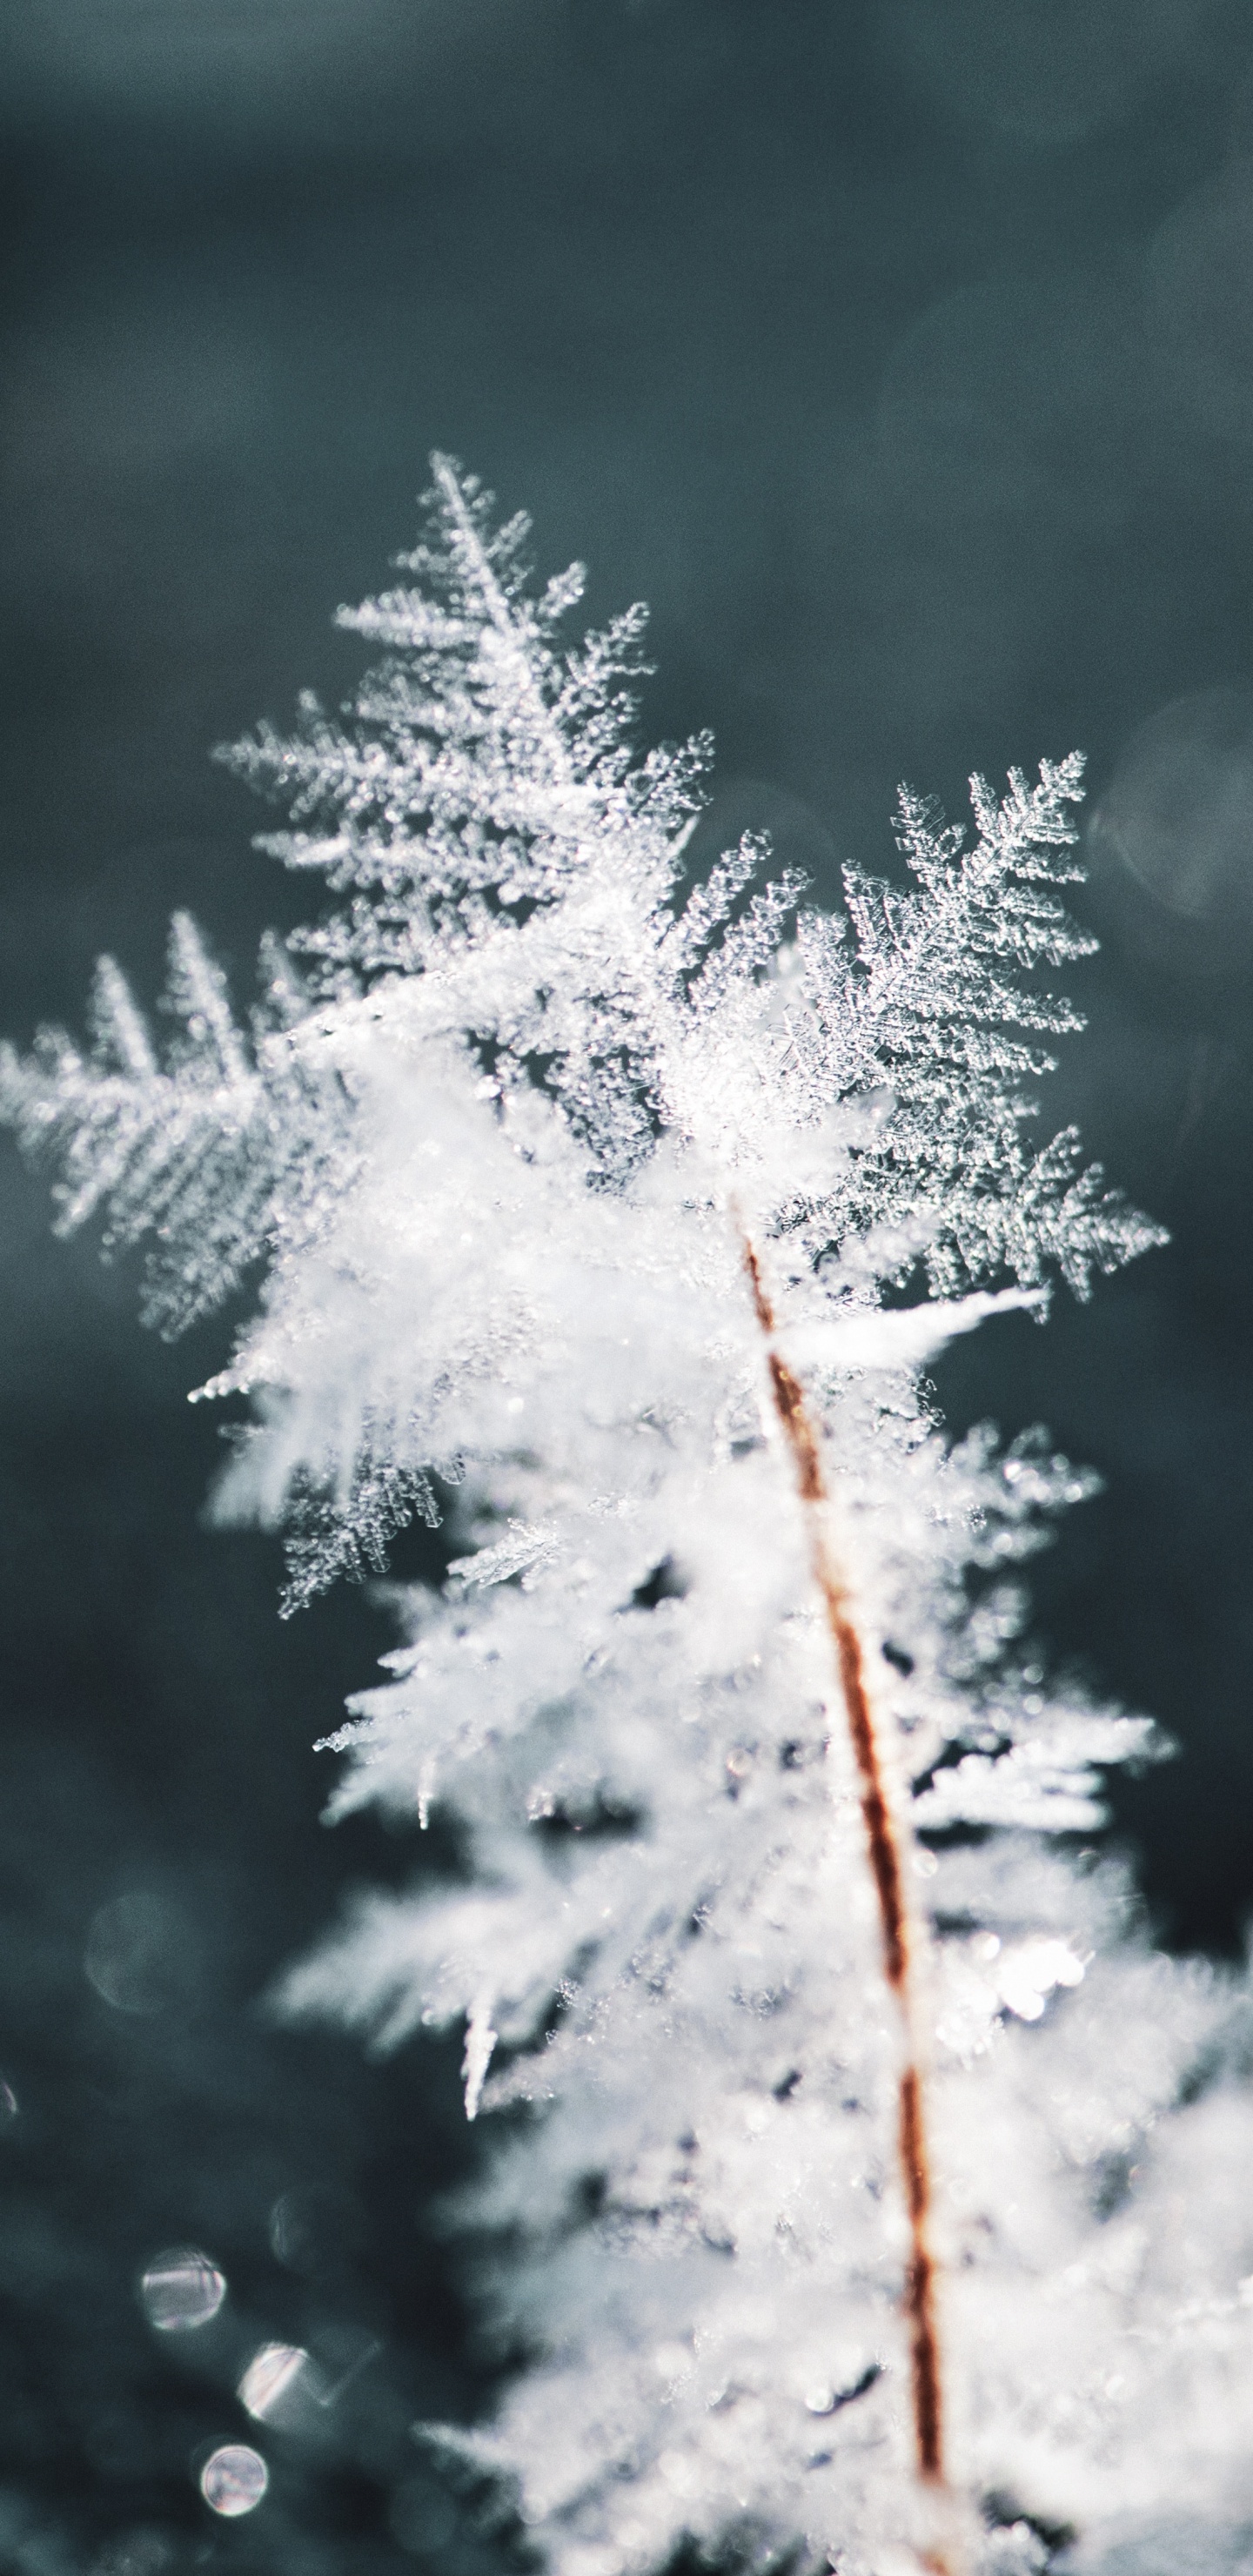 Winter, Schnee, Frost, Einfrieren, Branch. Wallpaper in 1440x2960 Resolution